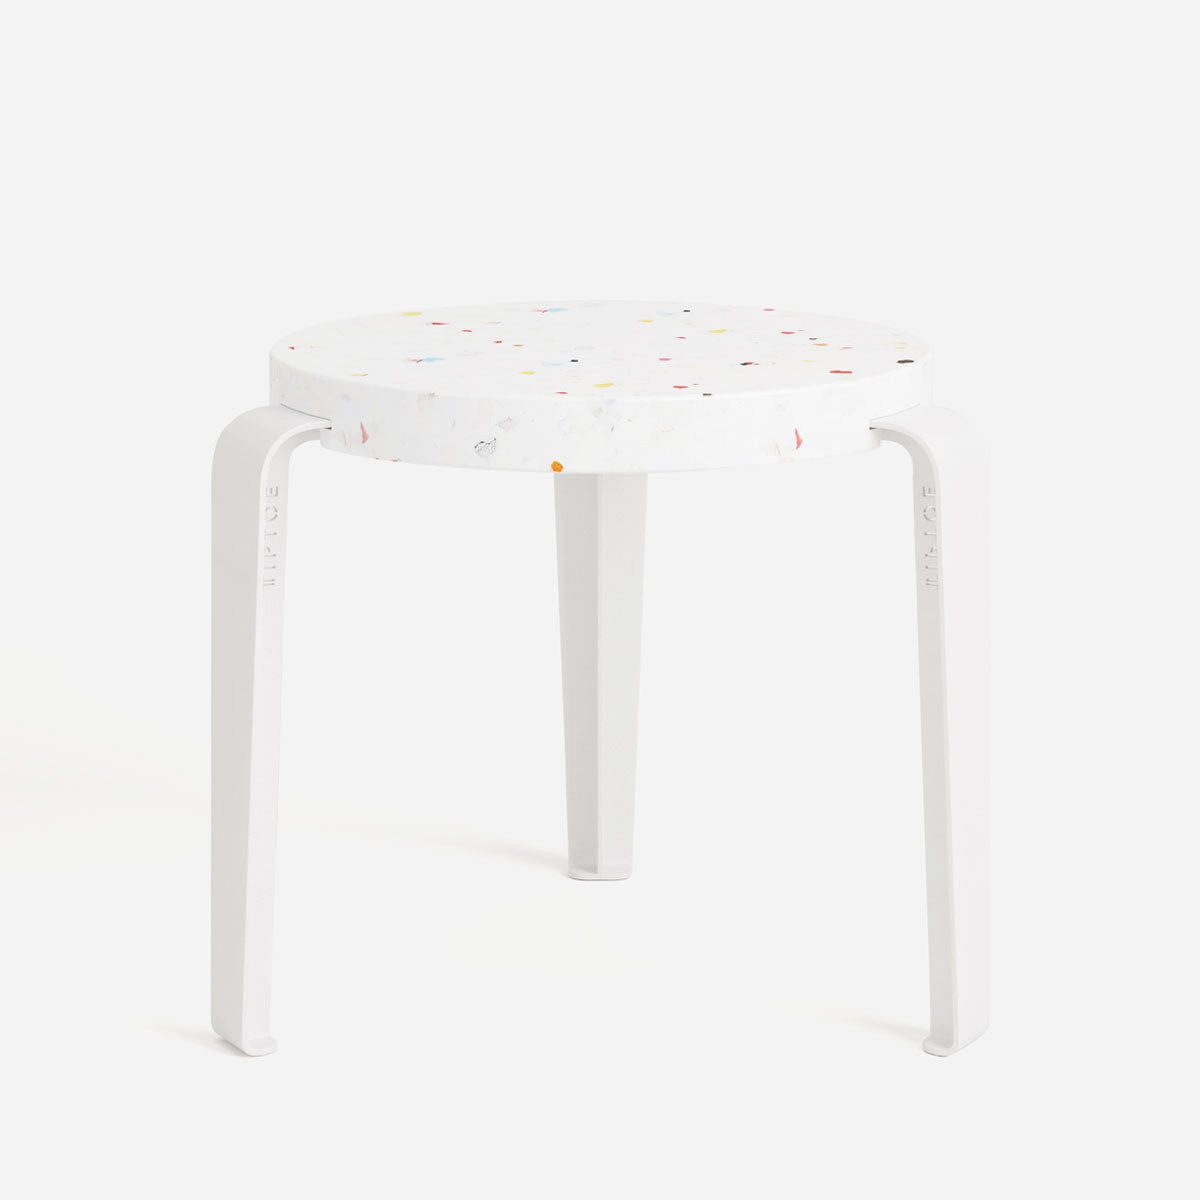 TIPTOE Sitzhocker MINI LOU kids stool – recycled plastic Tutti Frutti, für Kinderzimmer, bunter Look